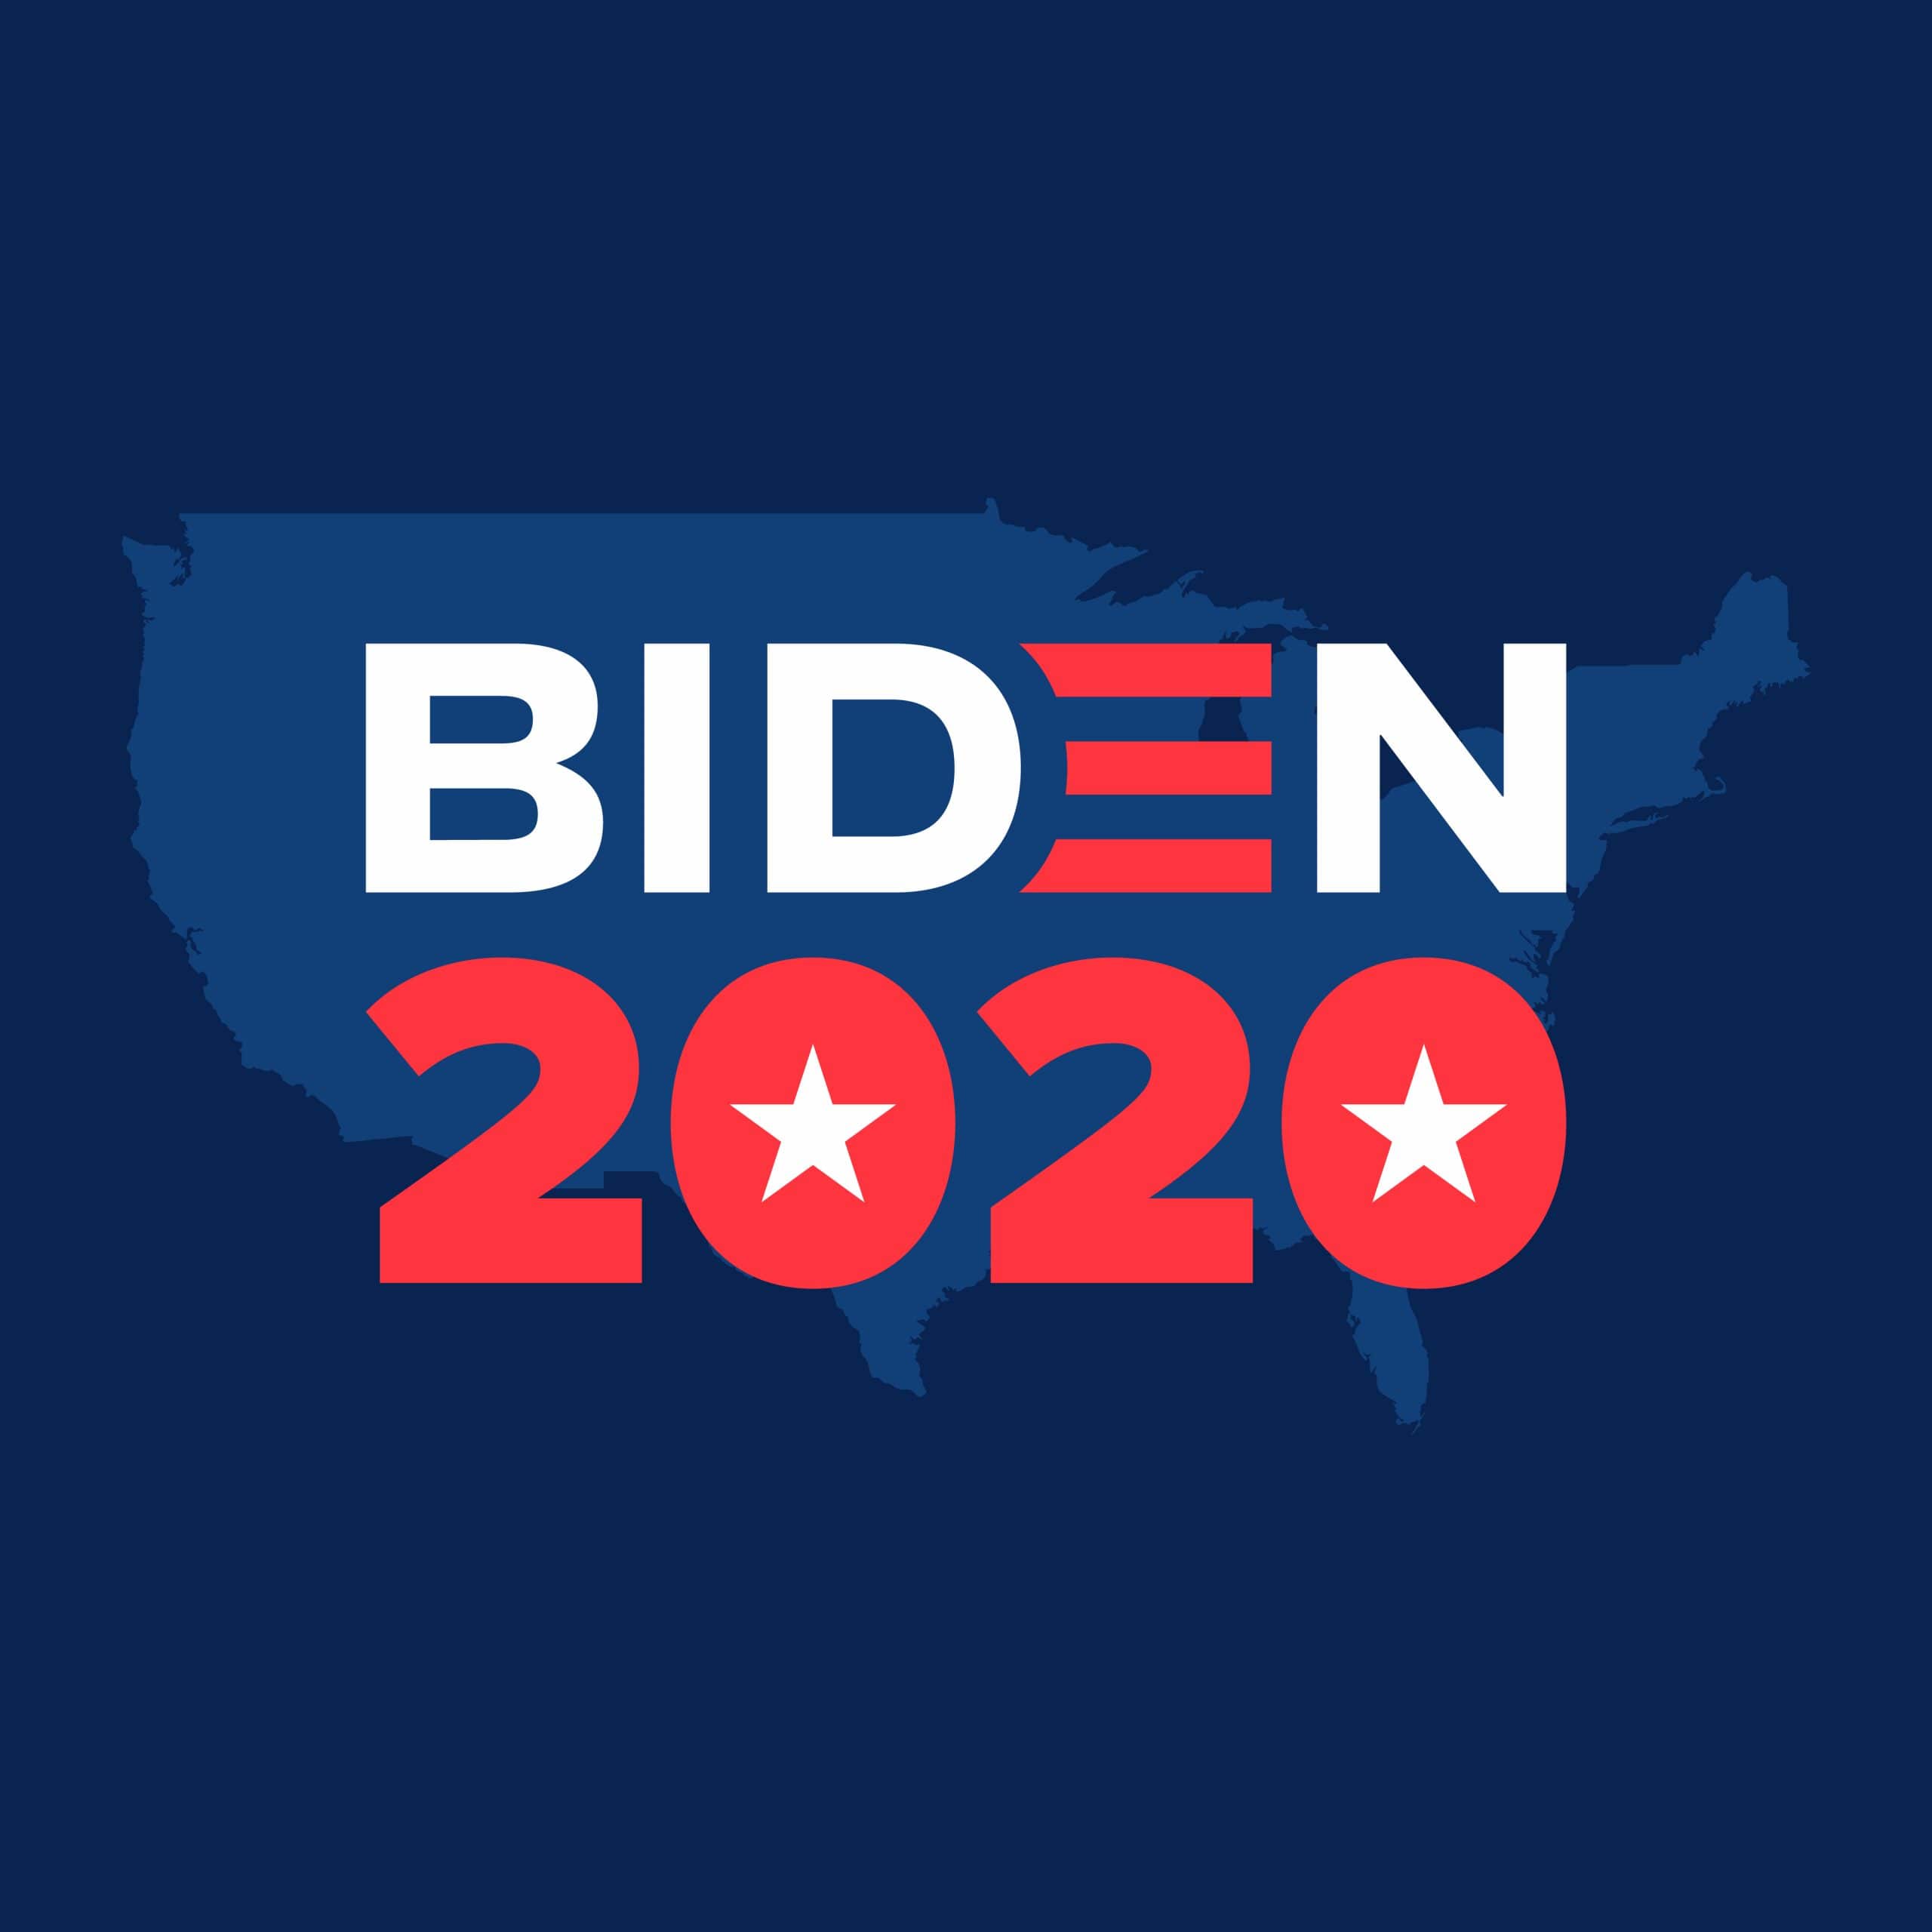 BIDEN 2020 Graphic 